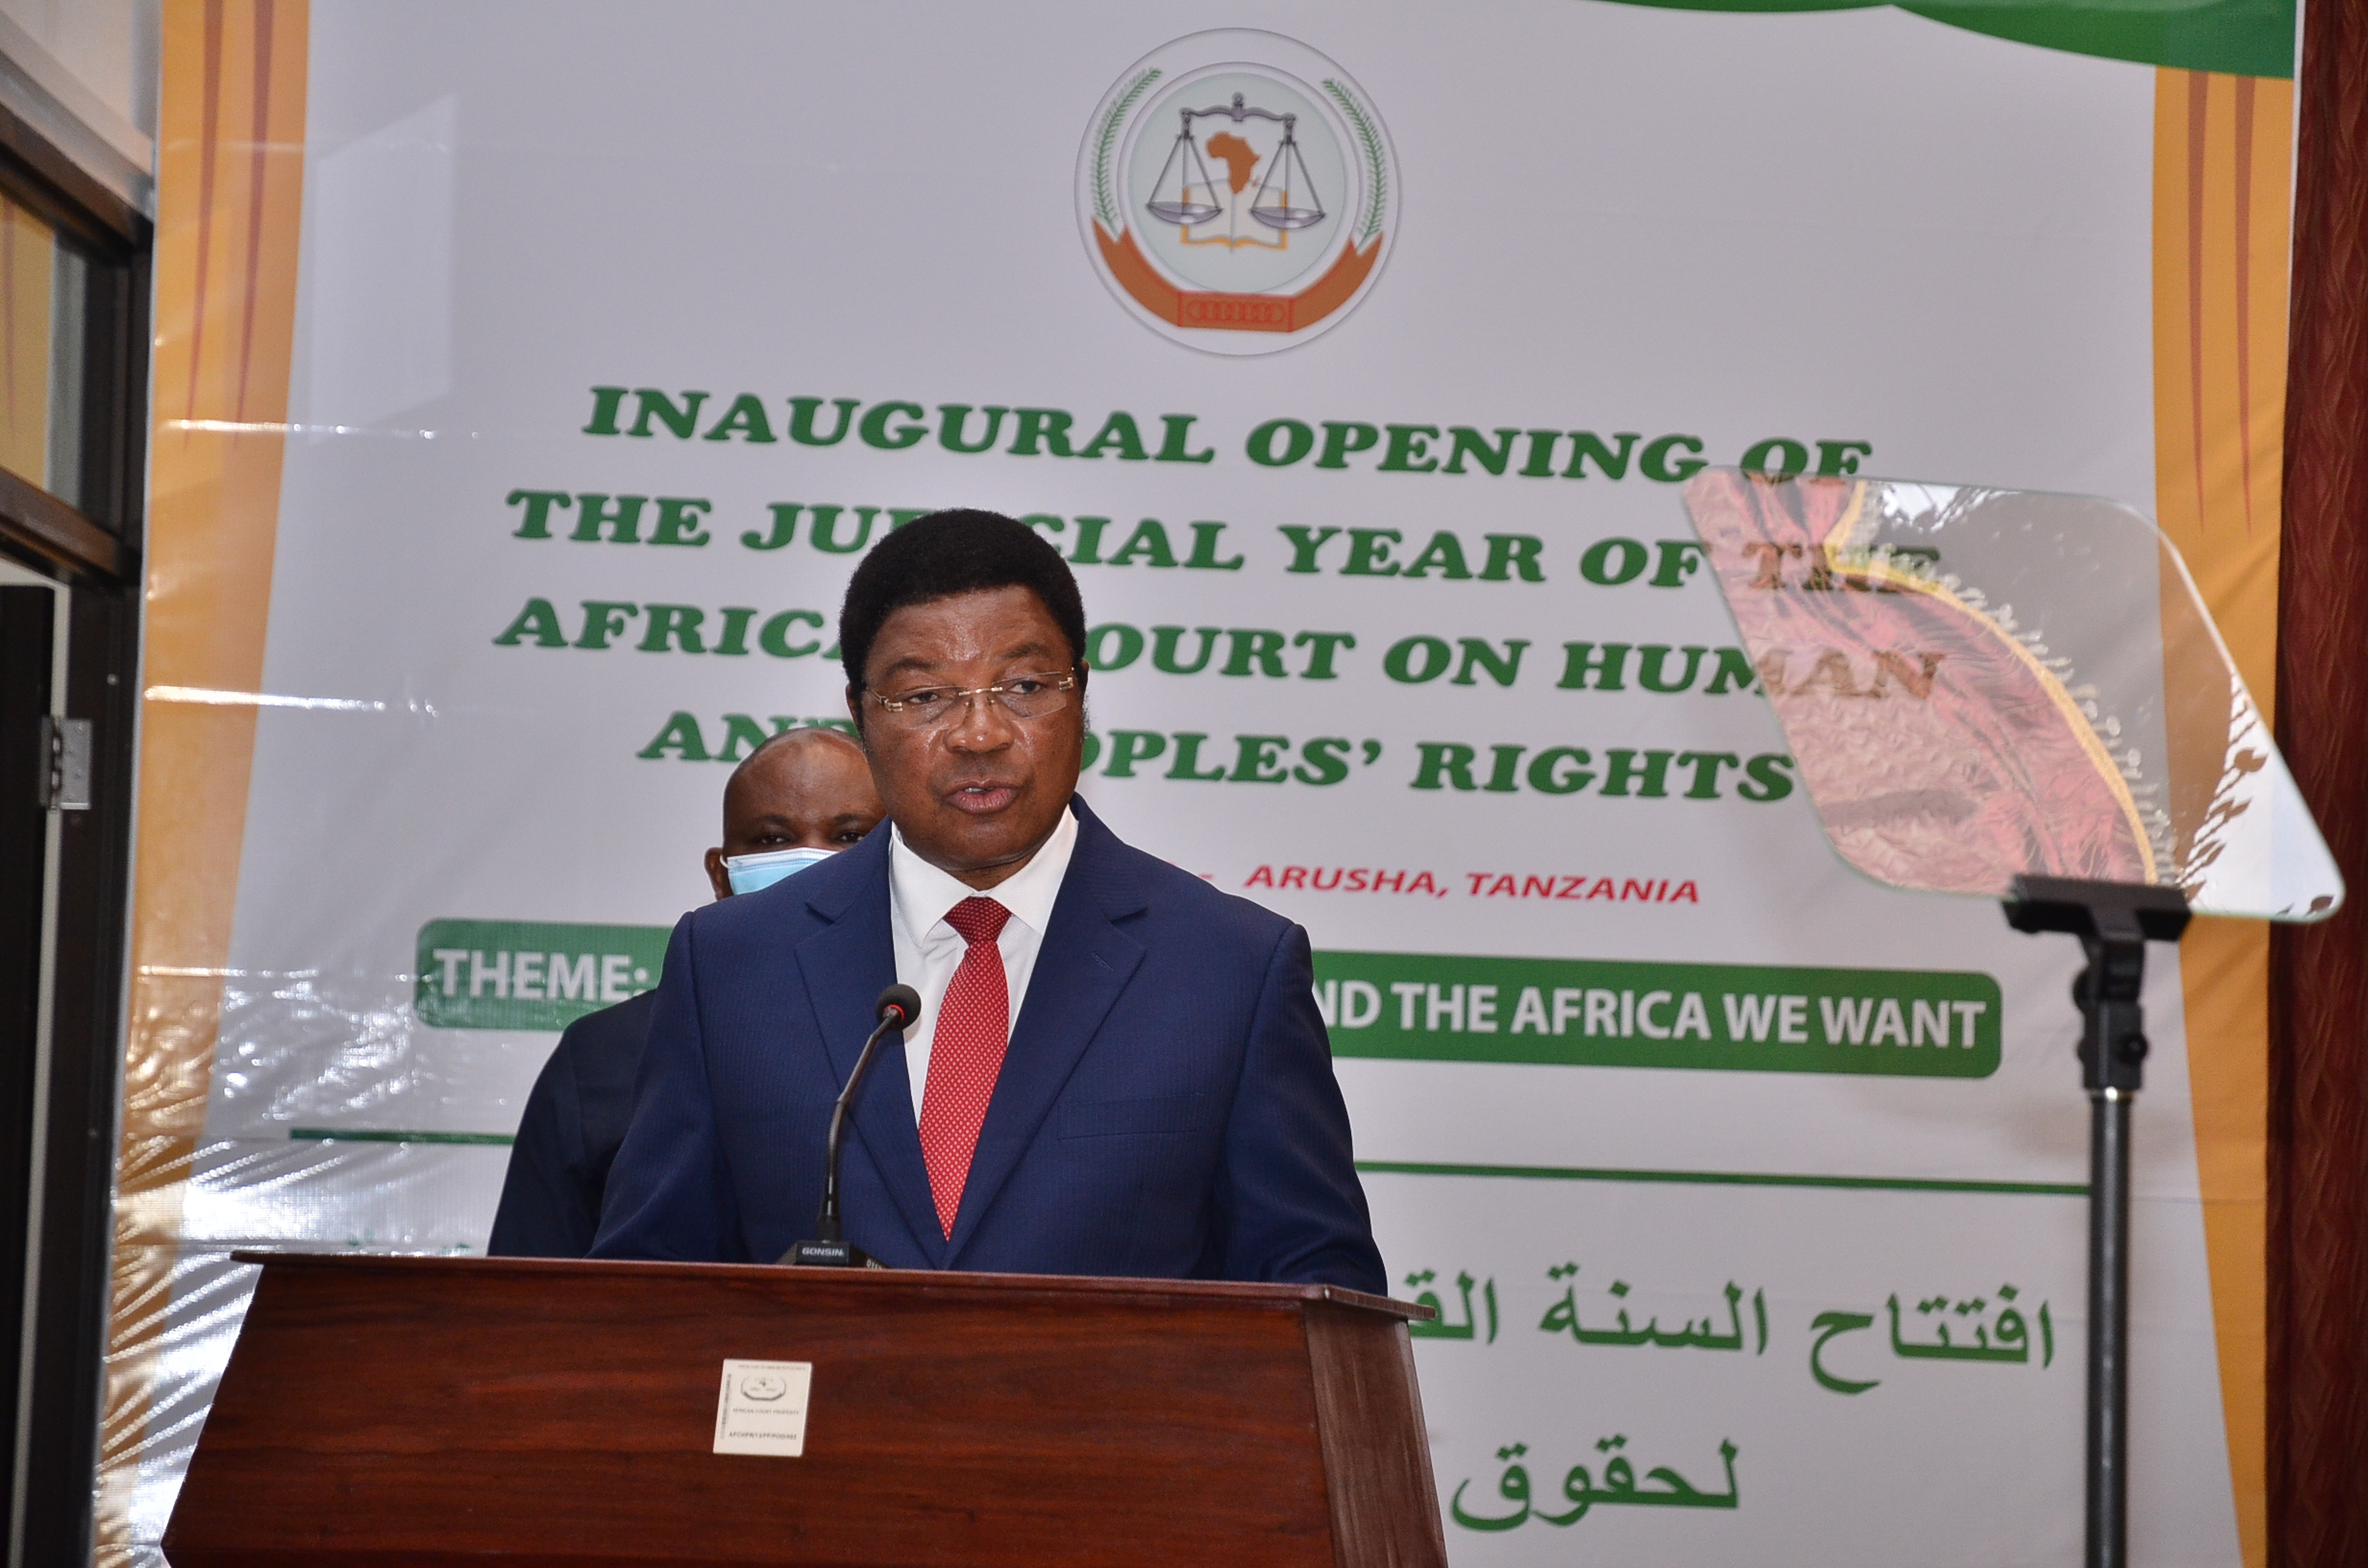 افتتاح السنة القضائية للمحكمة الأفريقية بمقر المحكمة في أروشا